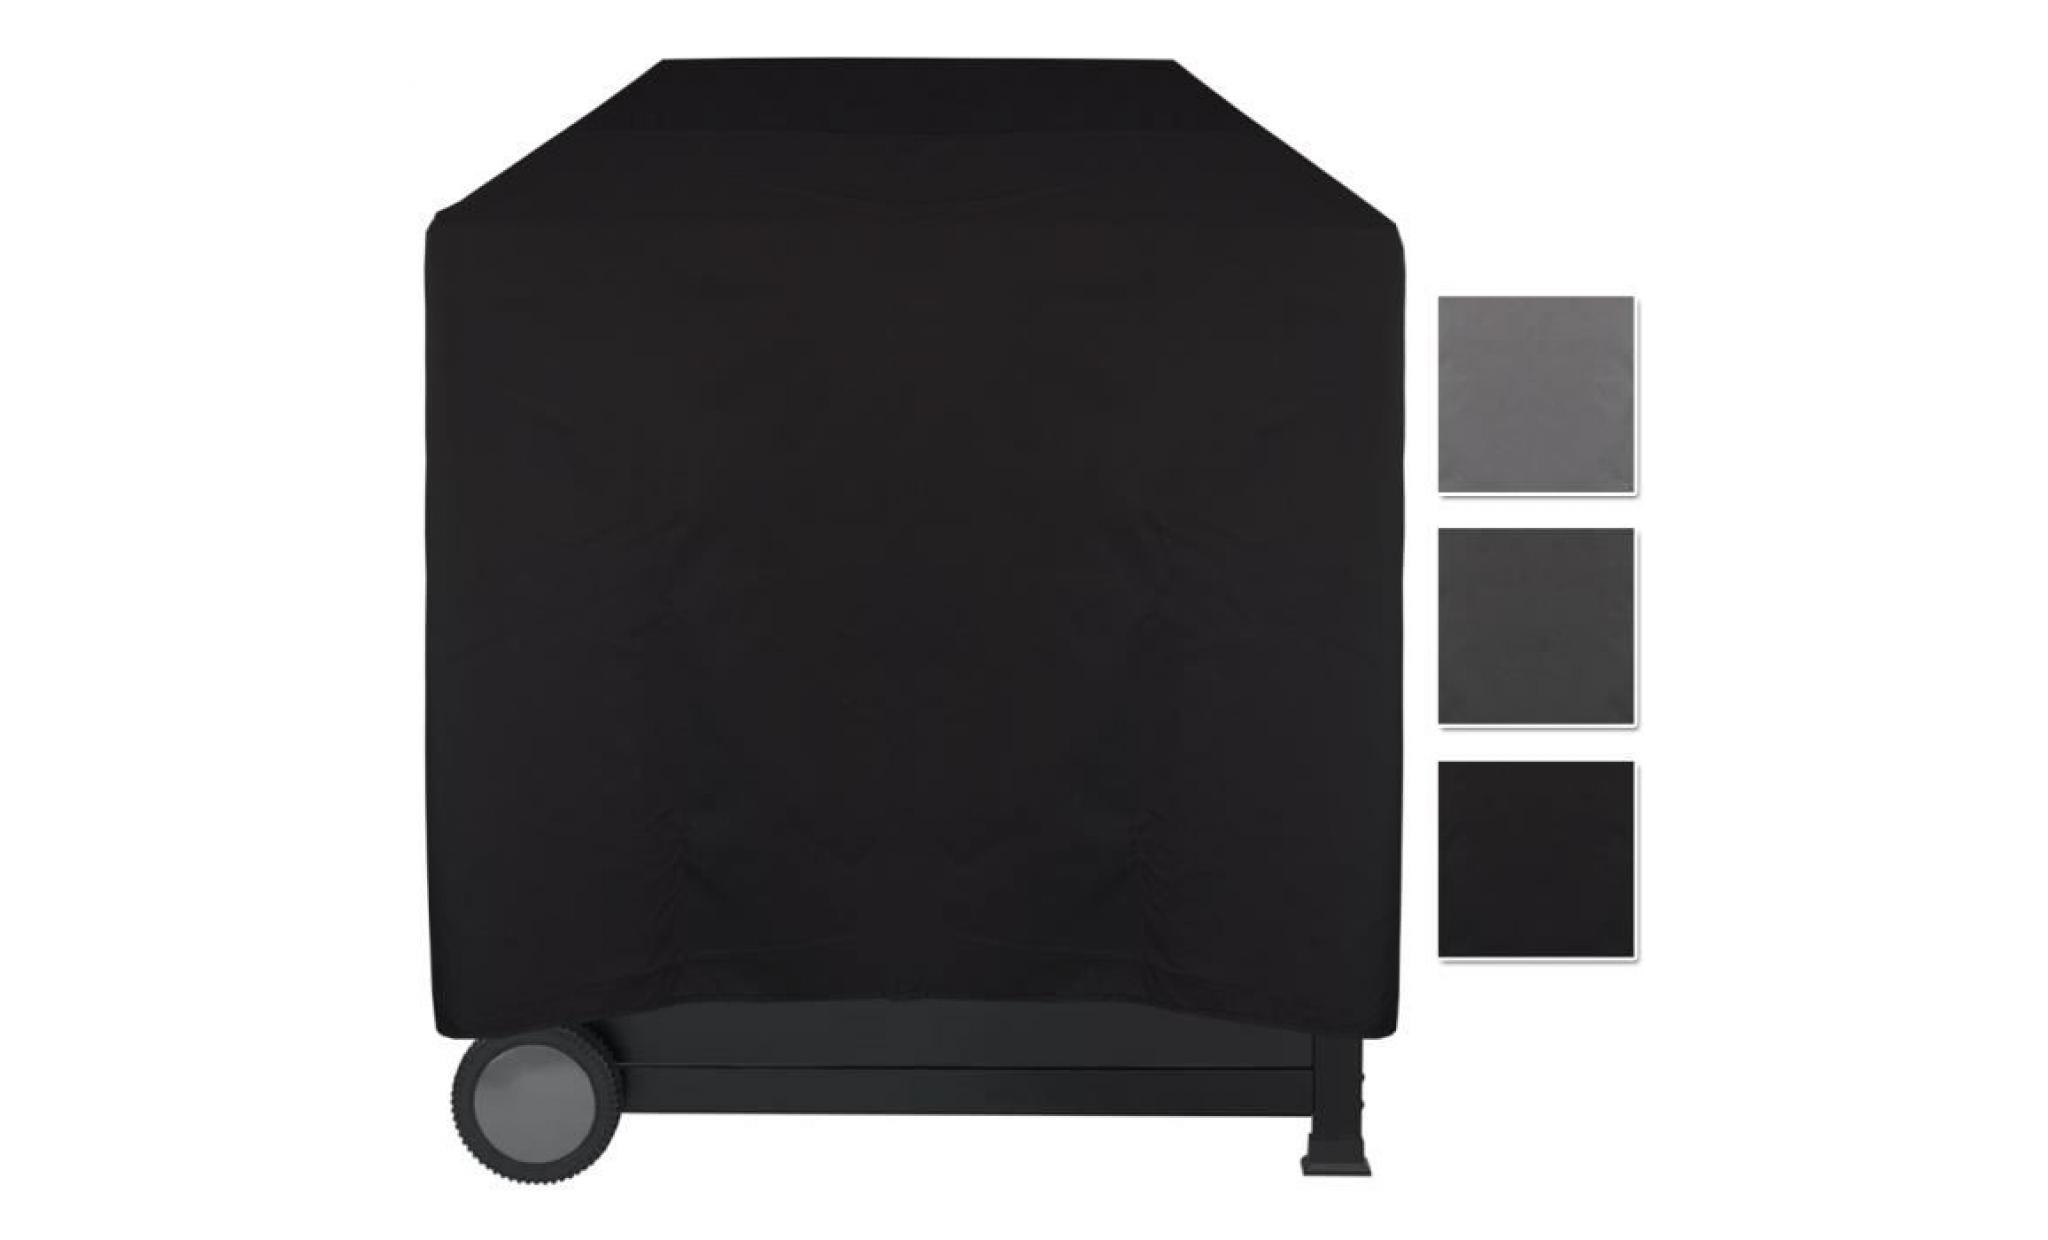 housse pour barbecue imperméable lounge noir, xl 158 x 78 x 120 cm   protège contre la pluie, la saleté et les rayons du soleil pas cher